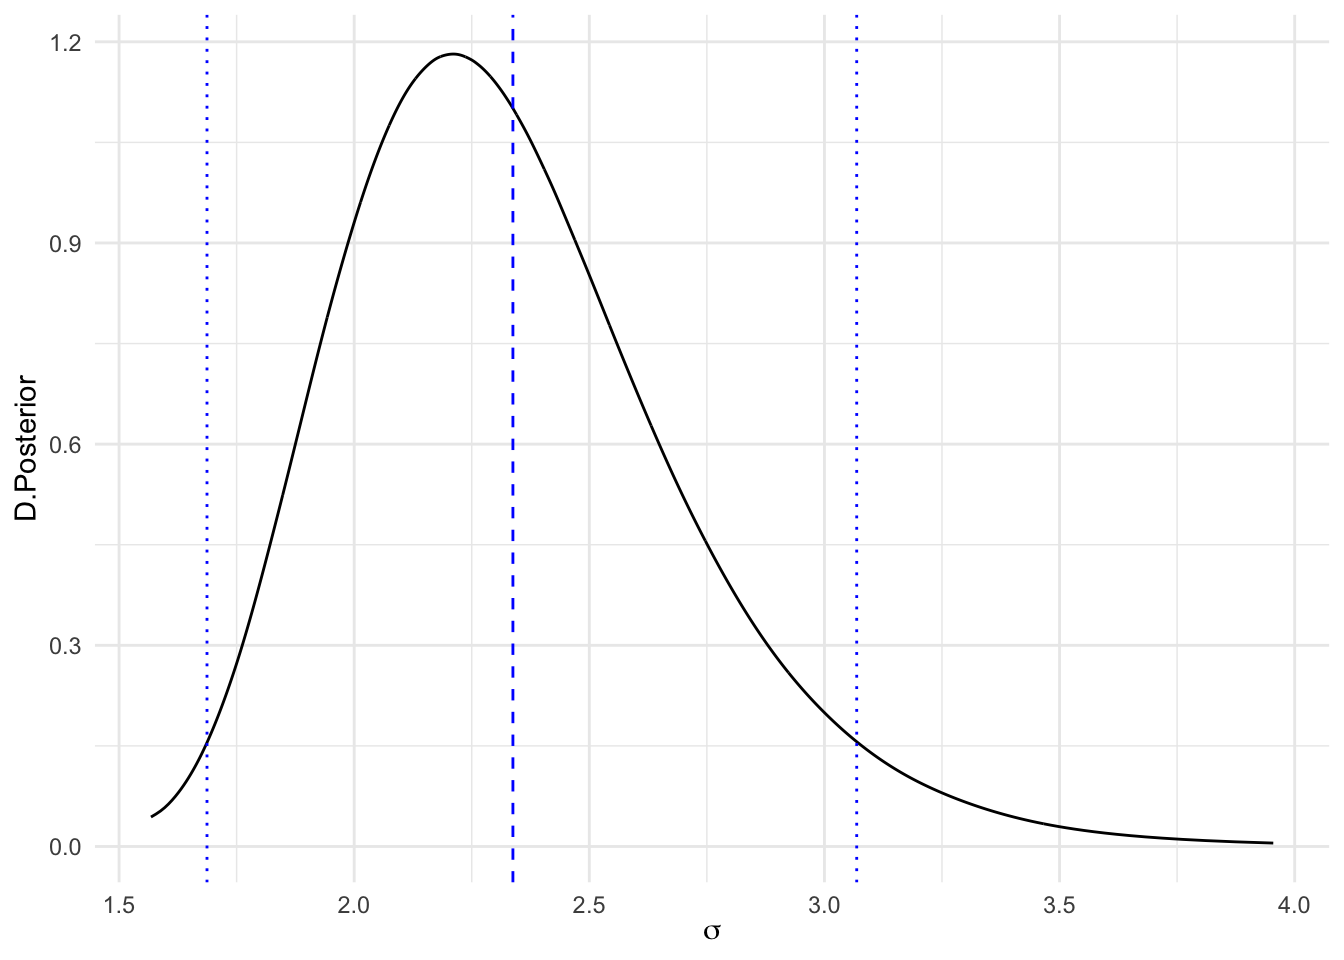 Distribución posterior, media y RC, de la desviación típica de los datos (sigma)